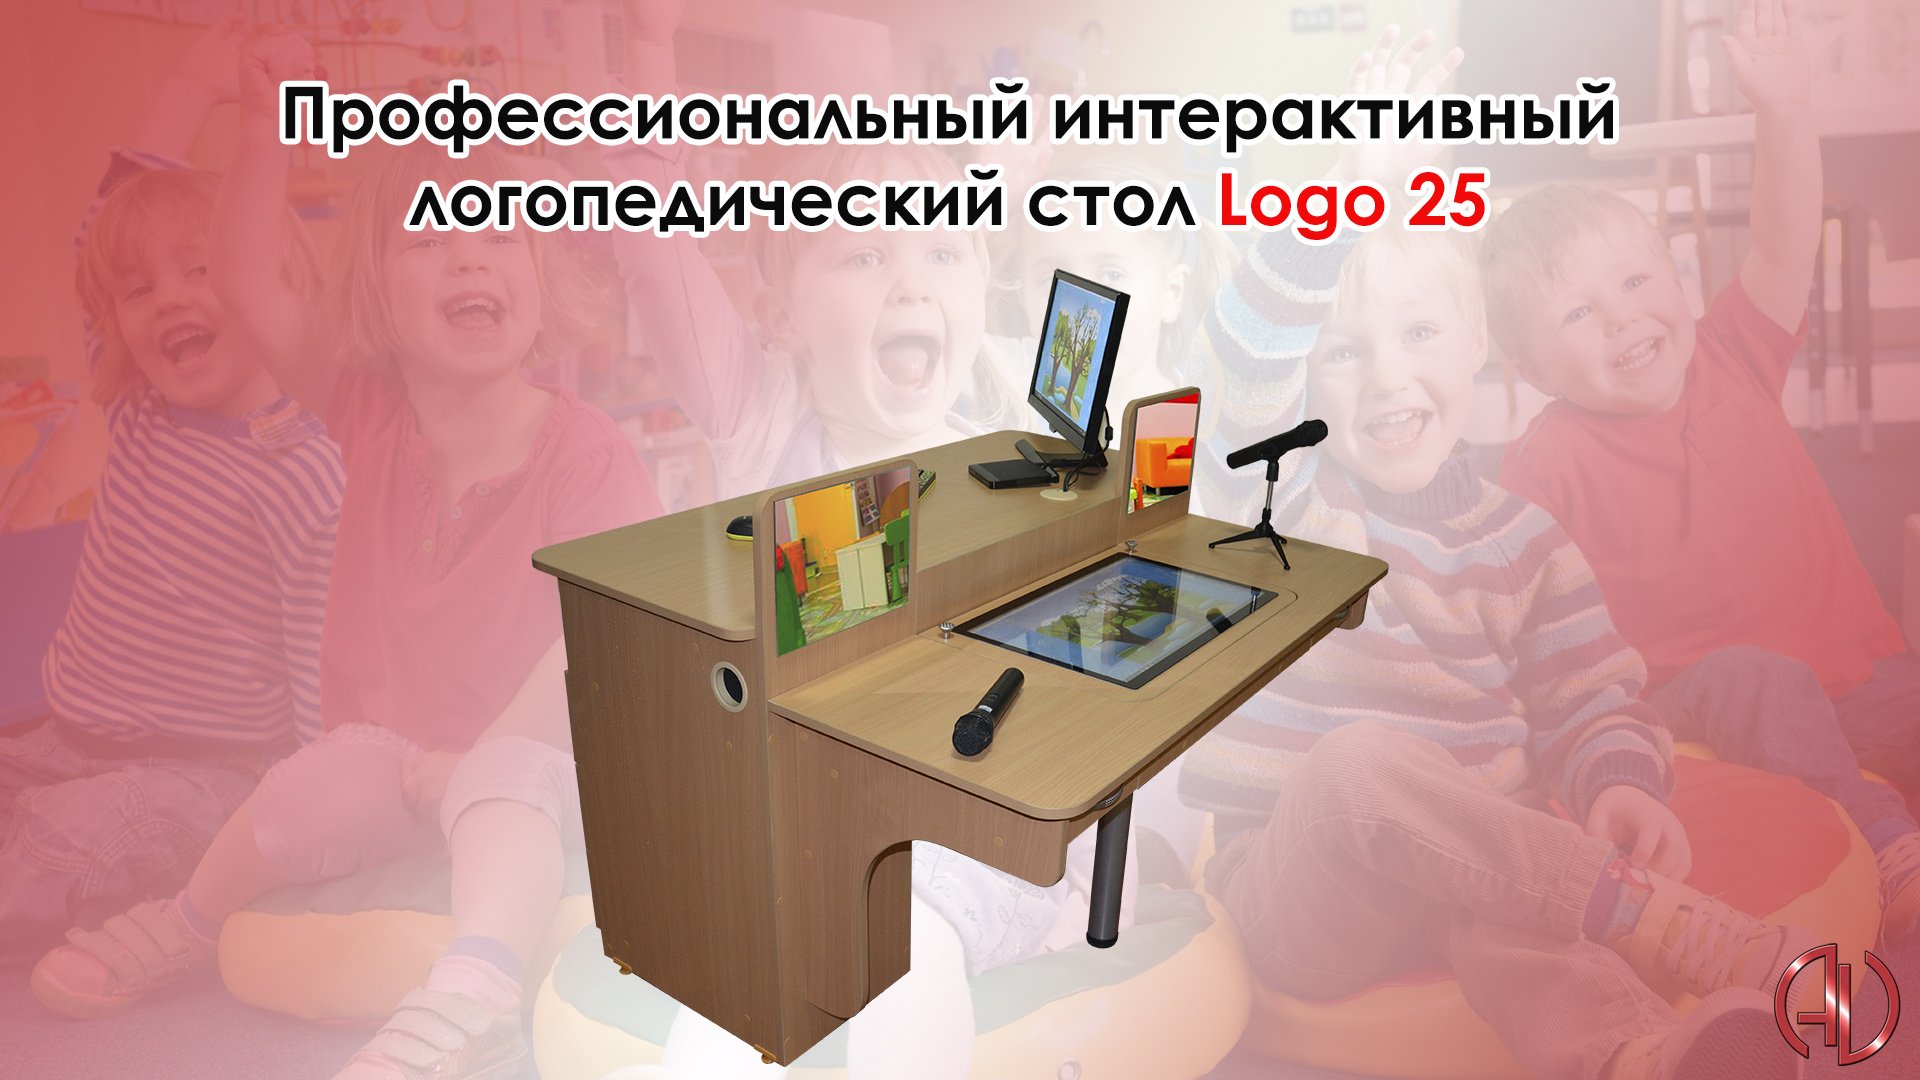 Интерактивный логопедический стол logo 25